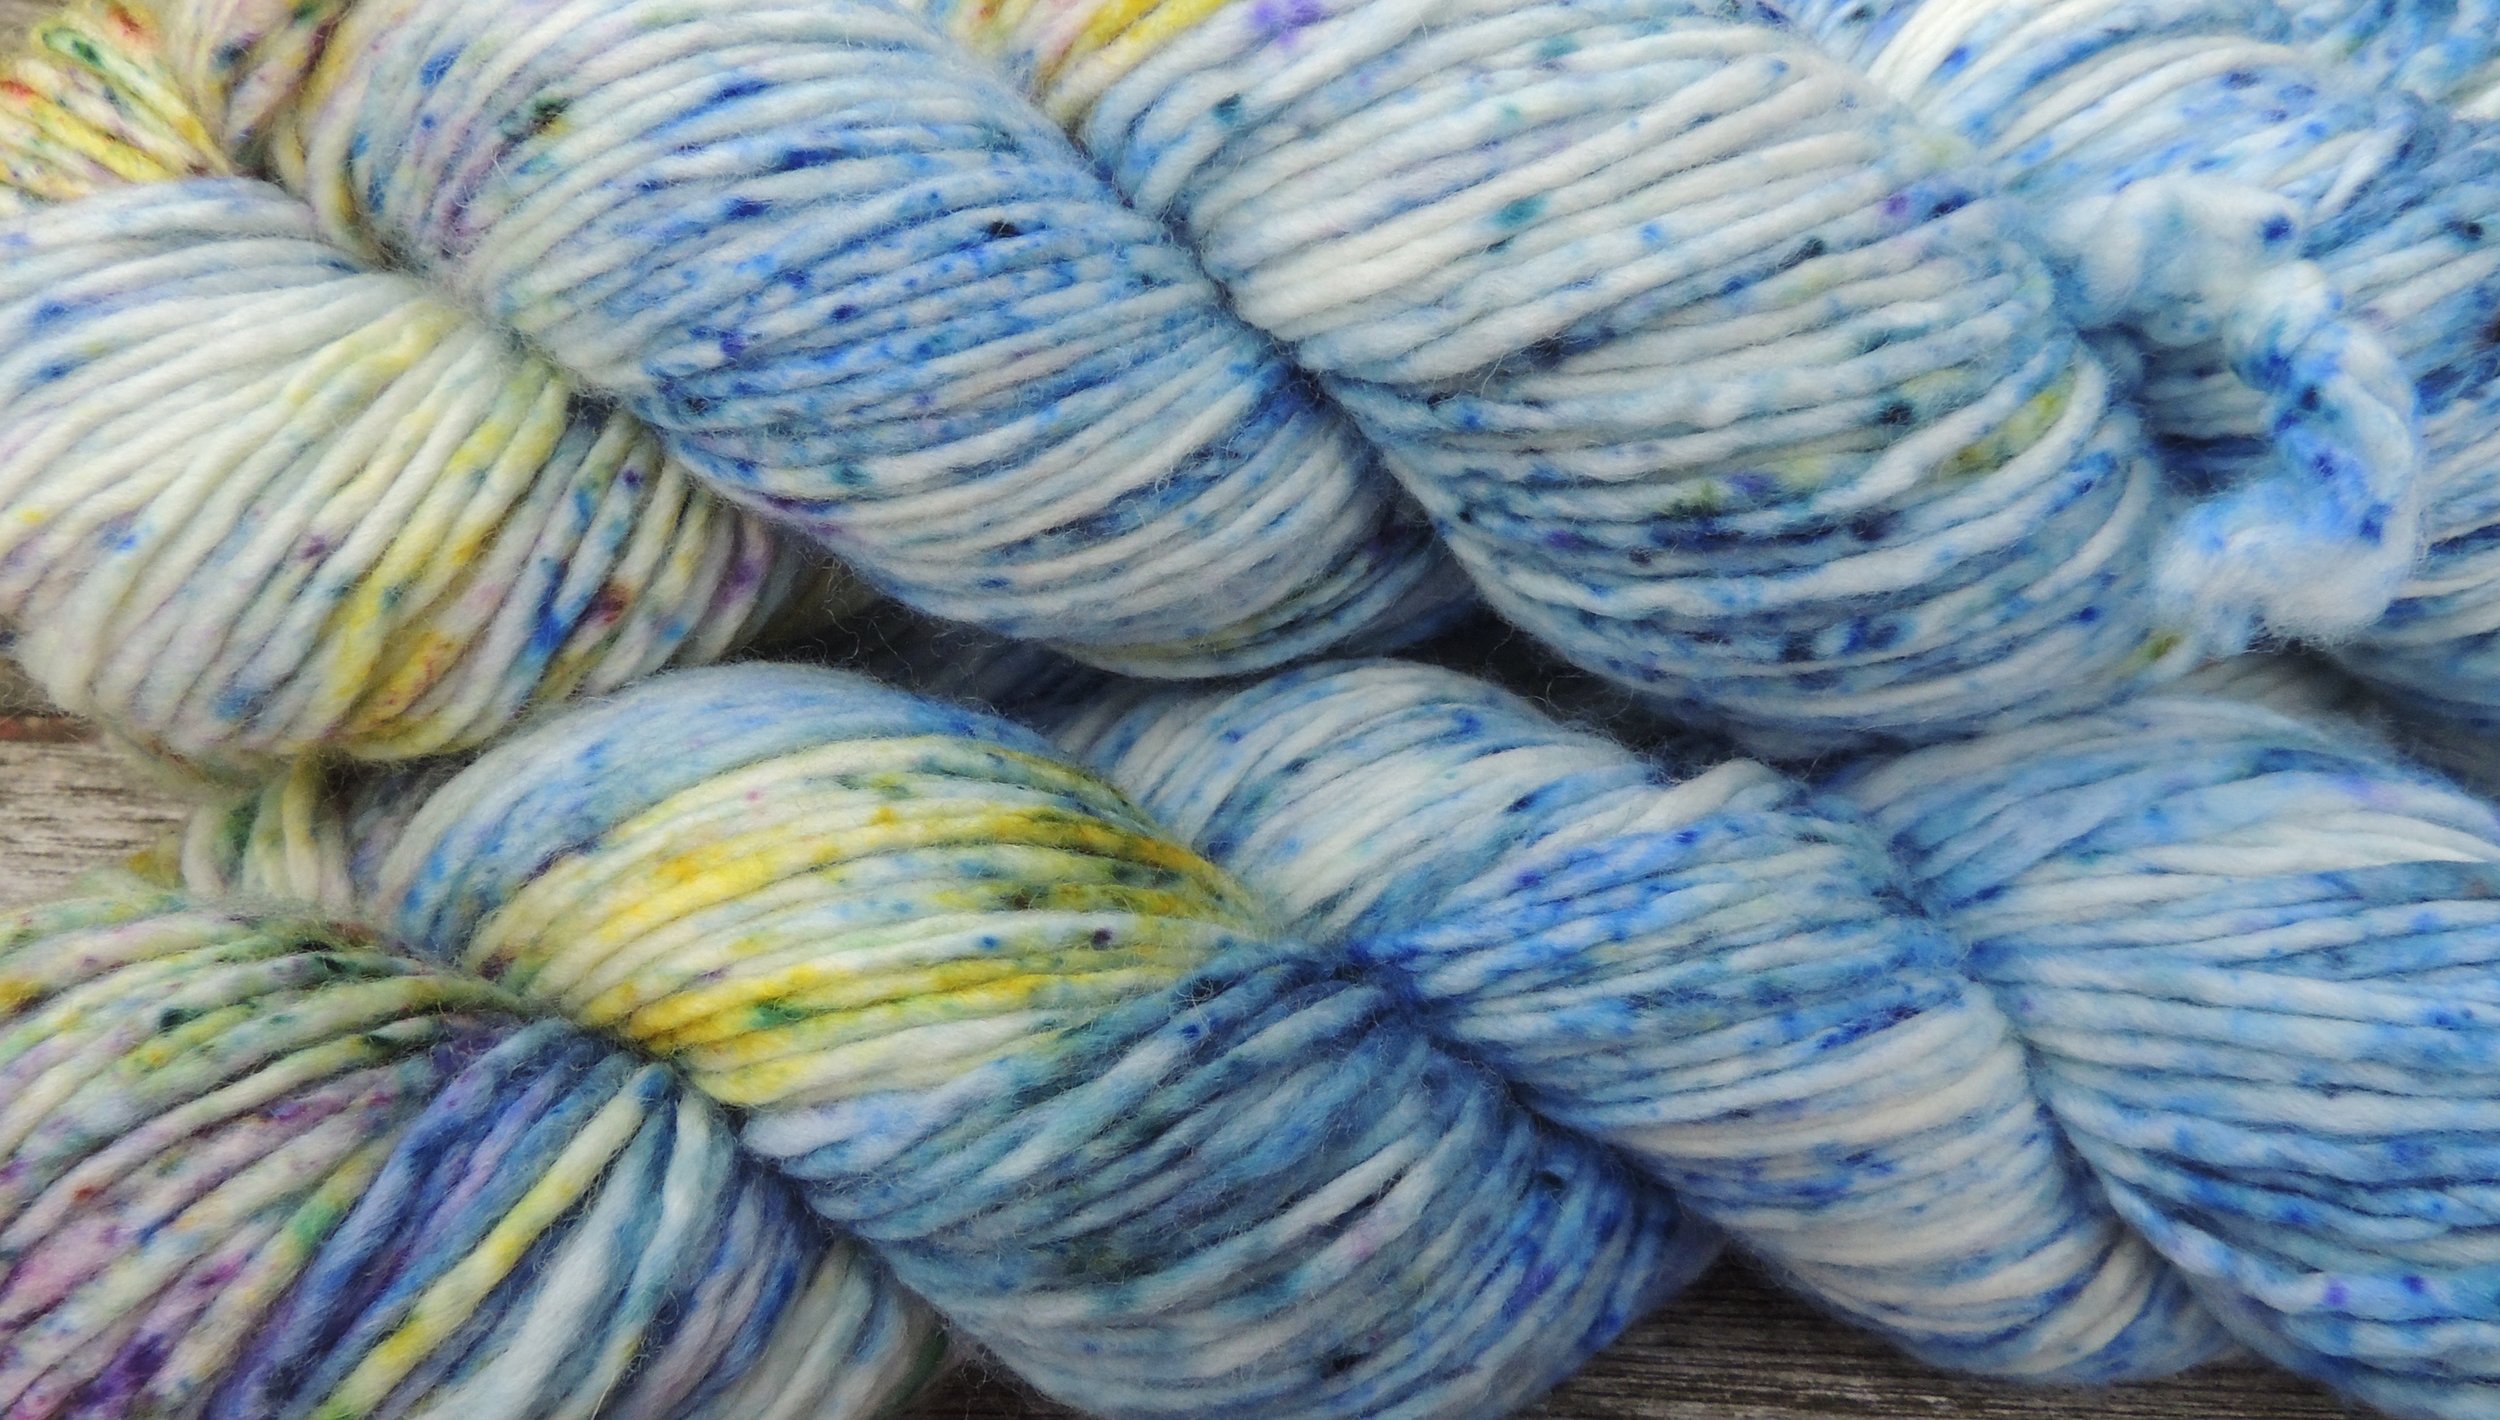 Goldeneye on Hand Dyed Polwarth wool DK yarn - 100 g